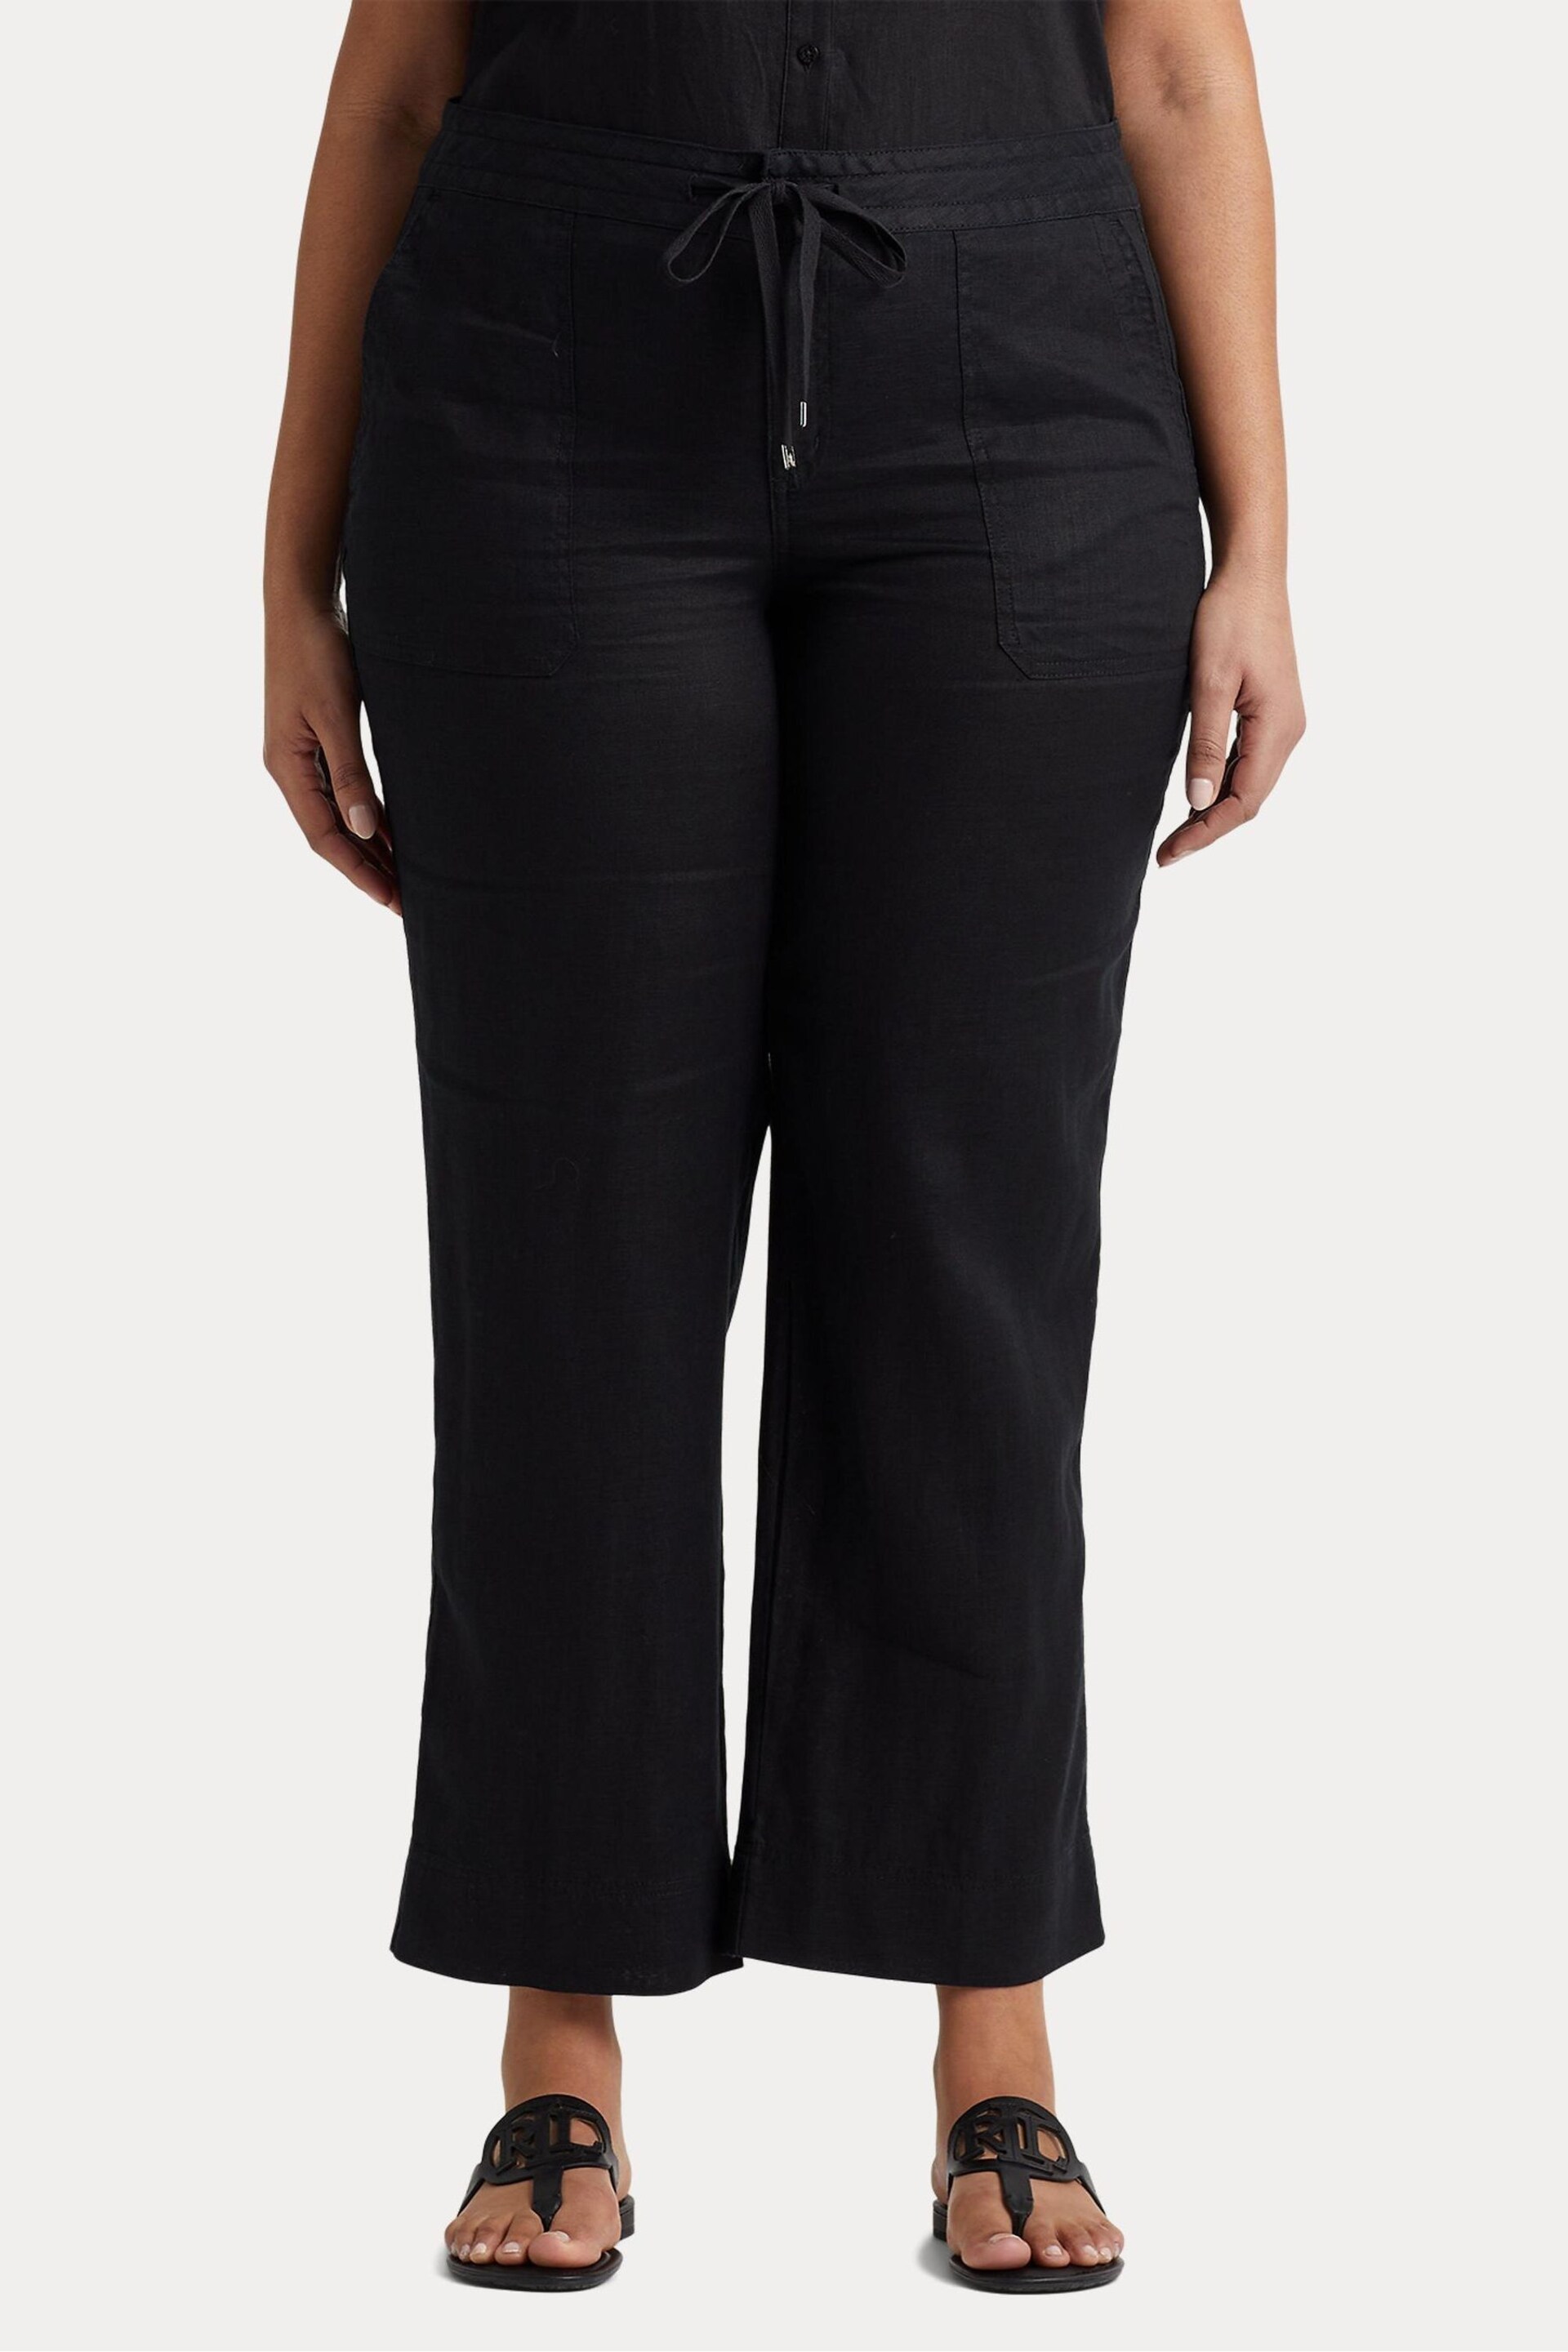 Lauren Ralph Lauren Curve Linen Drawstring Trousers - Image 4 of 8